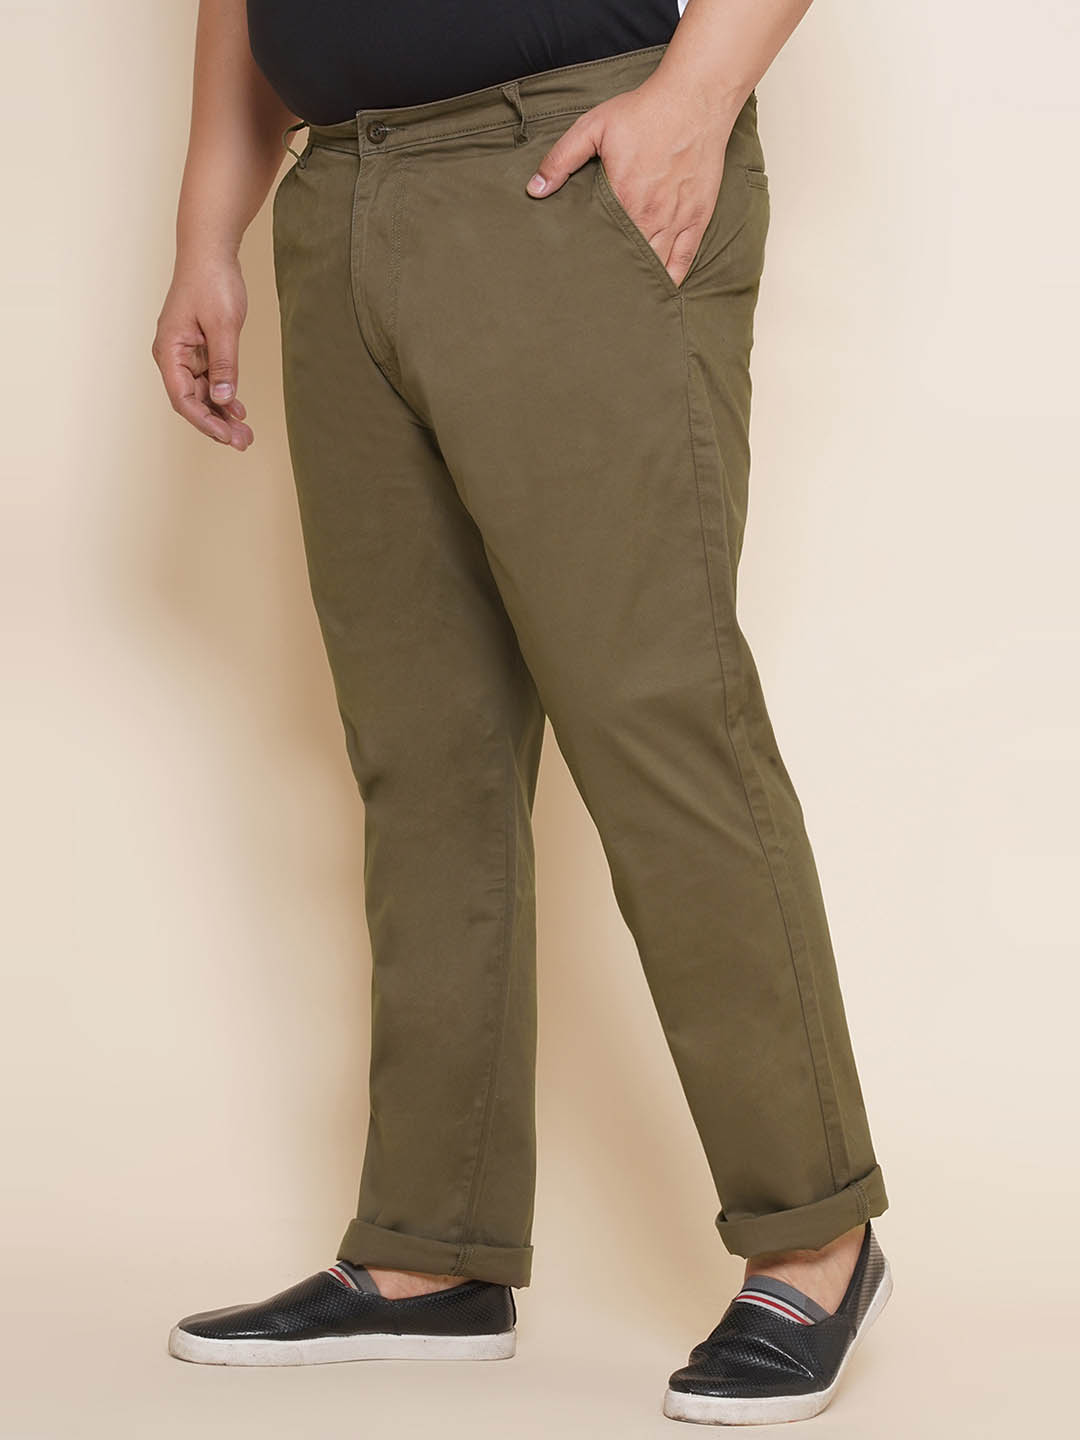 bottomwear/trousers/JPTR21013/jptr21013-4.jpg